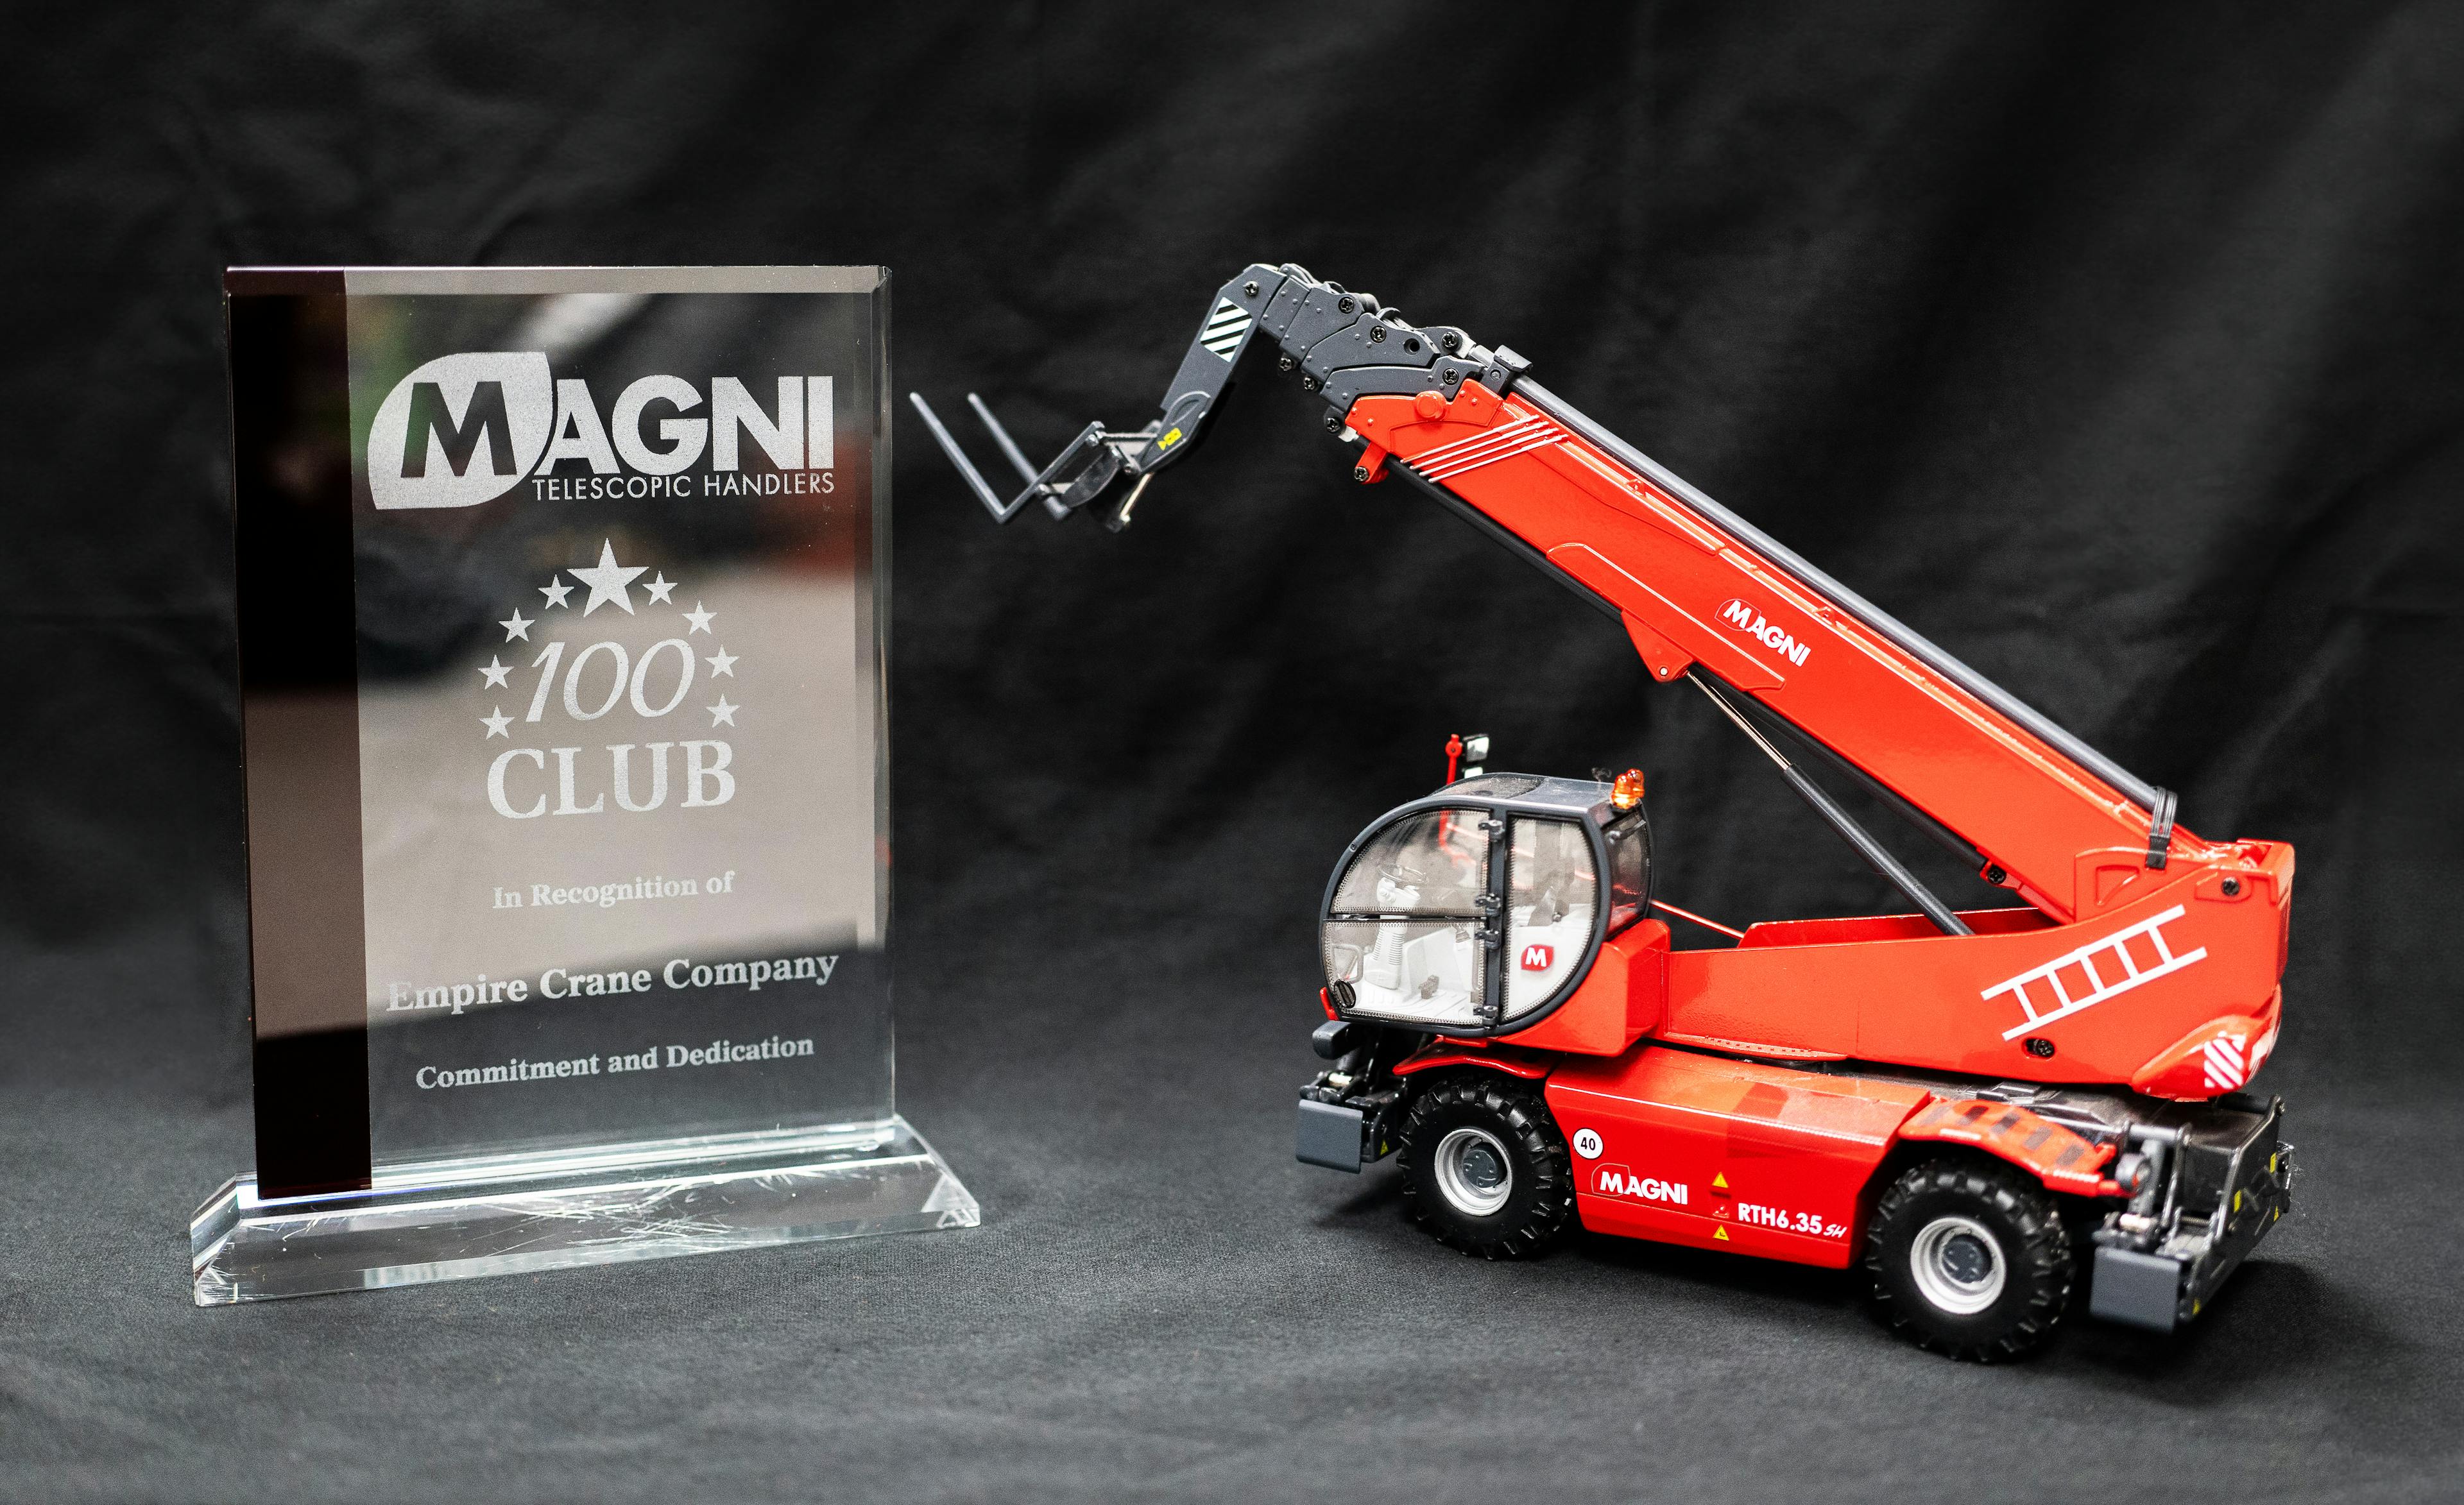 Empire Crane Company Wins Magni Dealer 100 Unit Club Award